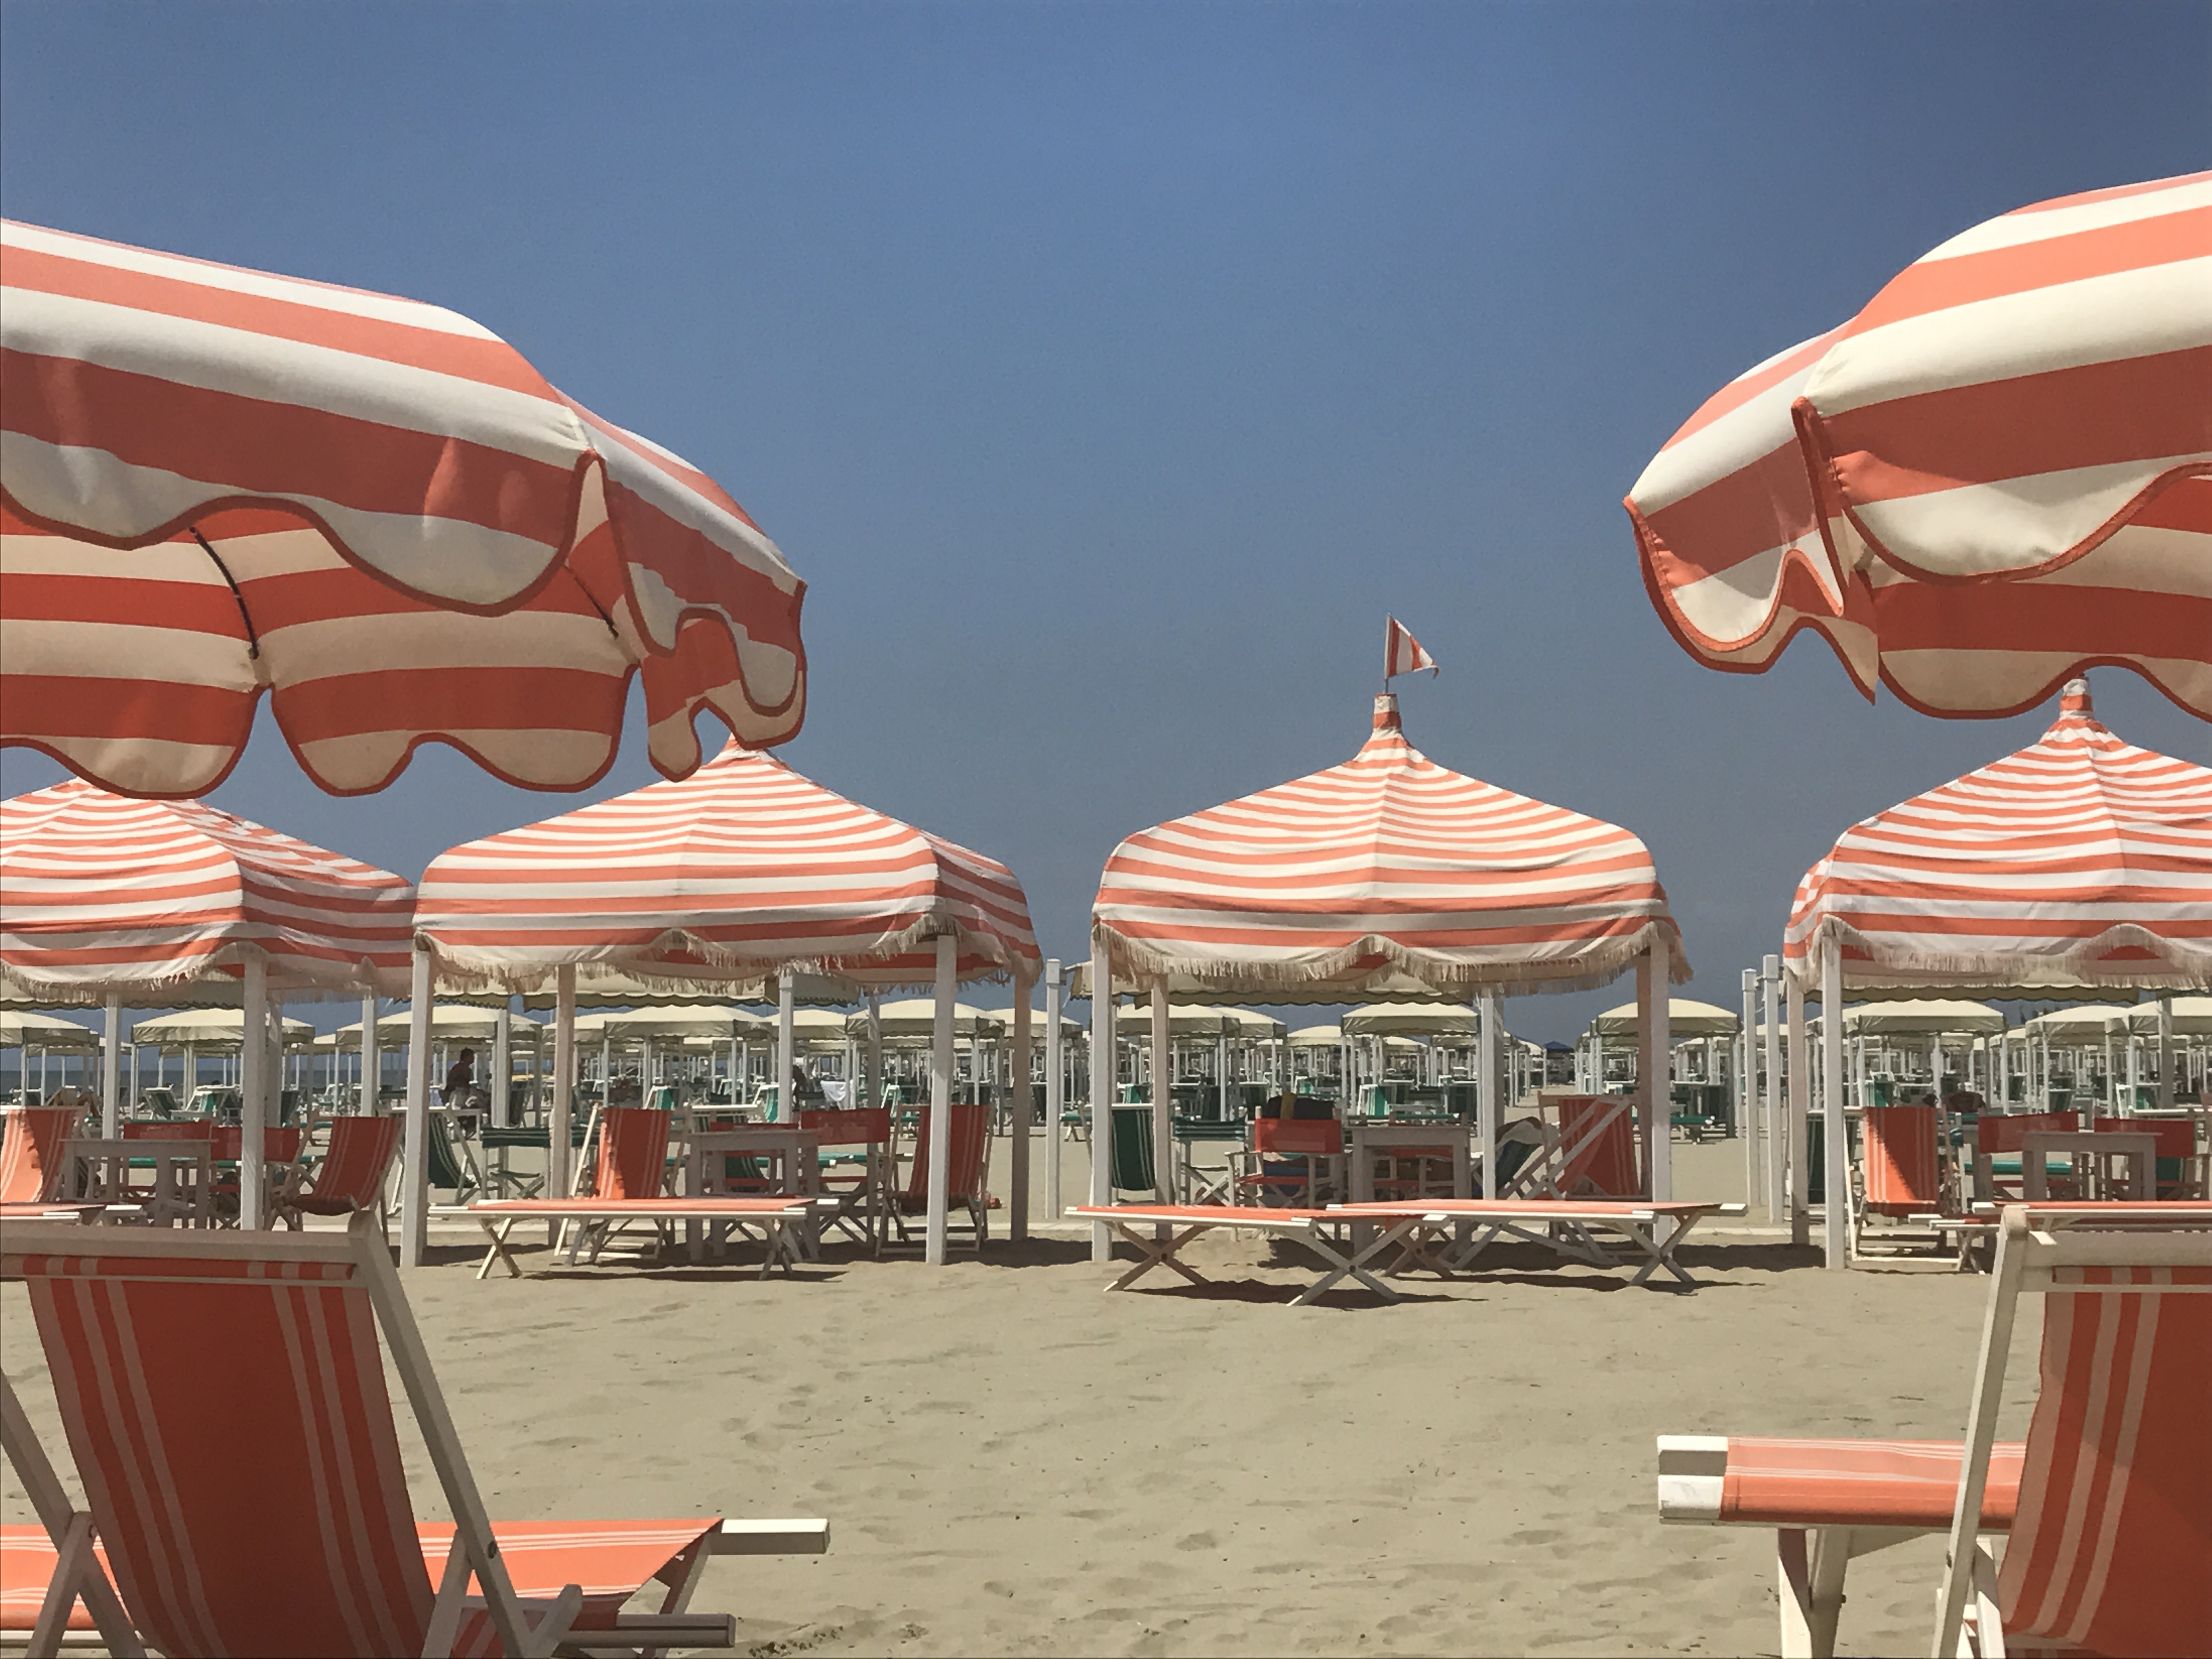 Strandurlaub in Italien... natürlich im Bagno. Italiens Küste ist reichlich mit Strandbädern bestückt, die teilweise zusätzlich über Pools verfügen. Für Sonnenschirm oder Zelt mit 2-4 Sonnenstühlen sollte man allerdings 50 euro pro Tag einkalkulieren.